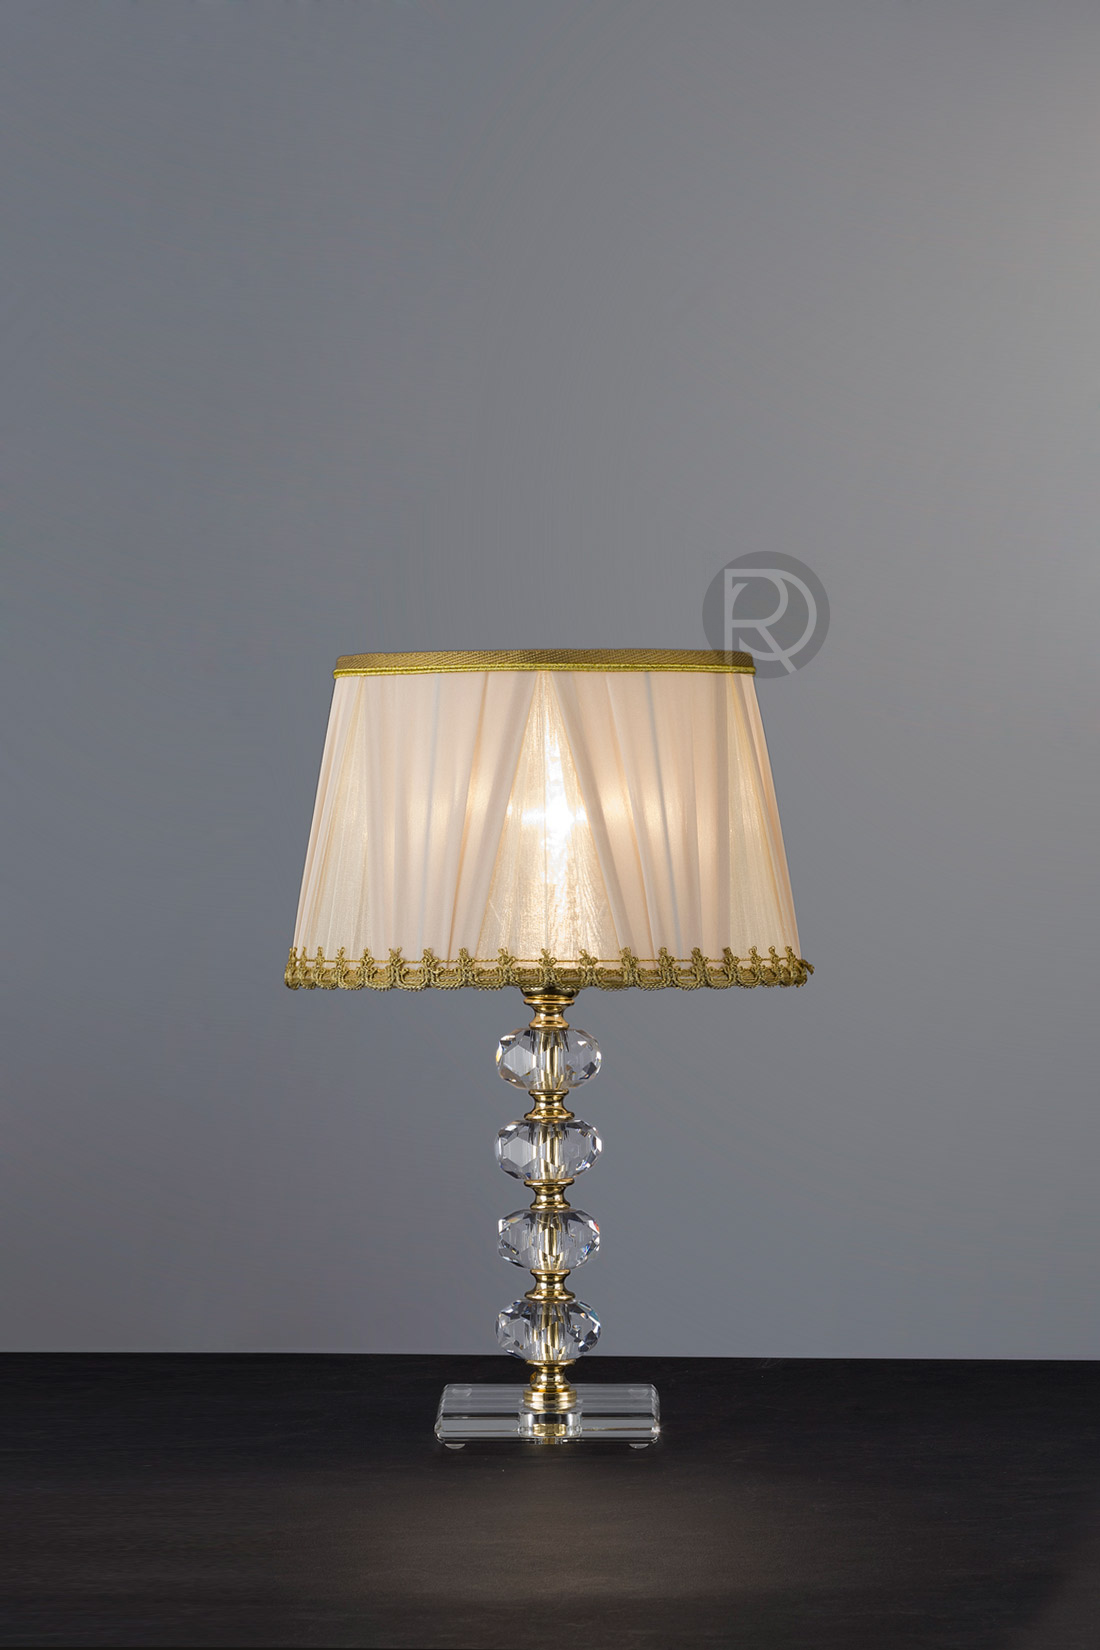 Настольная лампа LG by Euroluce